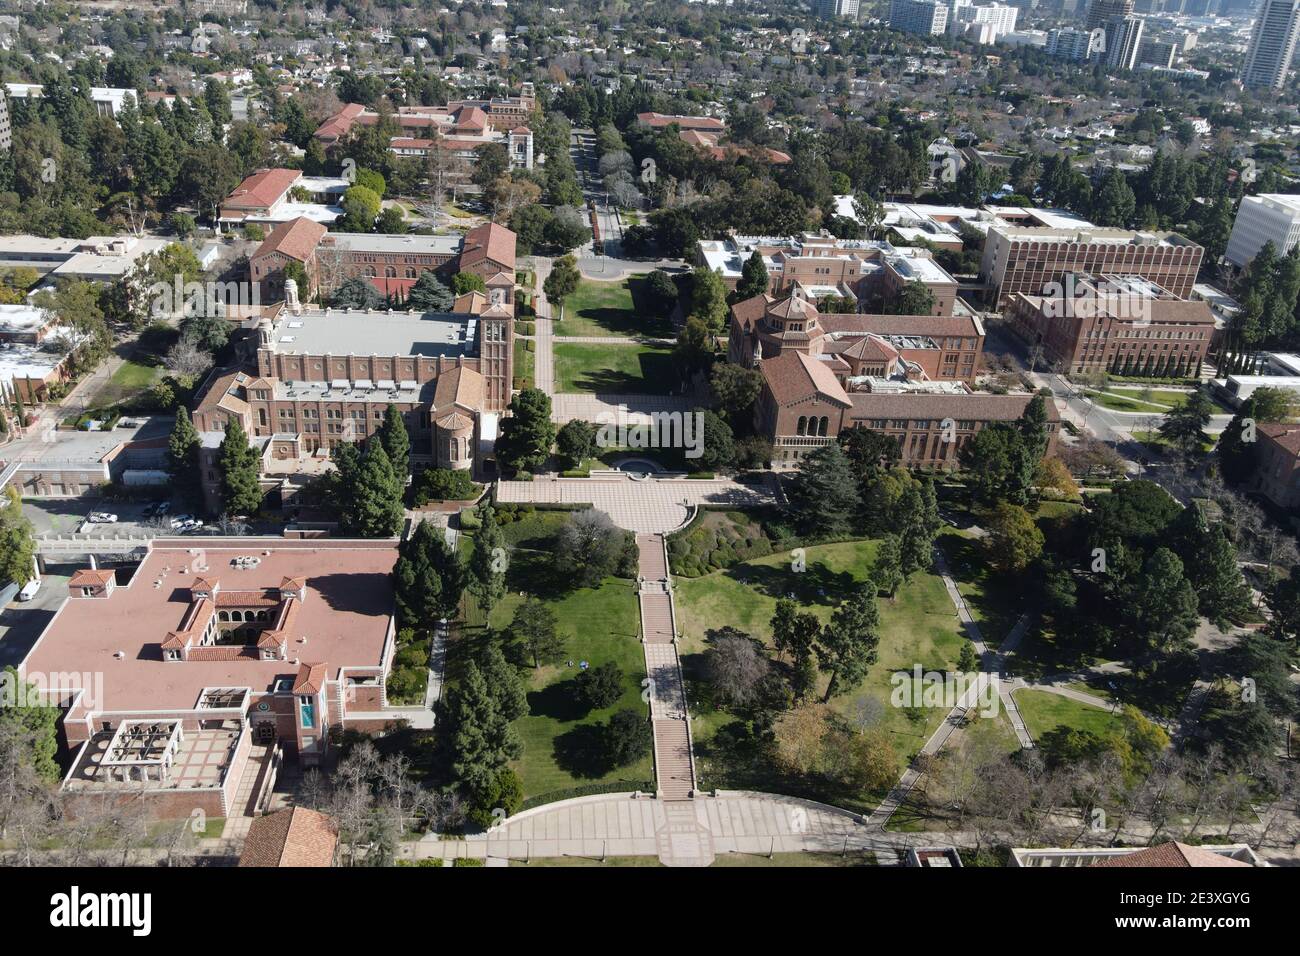 Une vue aérienne du campus de l'UCLA, le samedi 16 janvier 2021, à Los Angeles. Banque D'Images